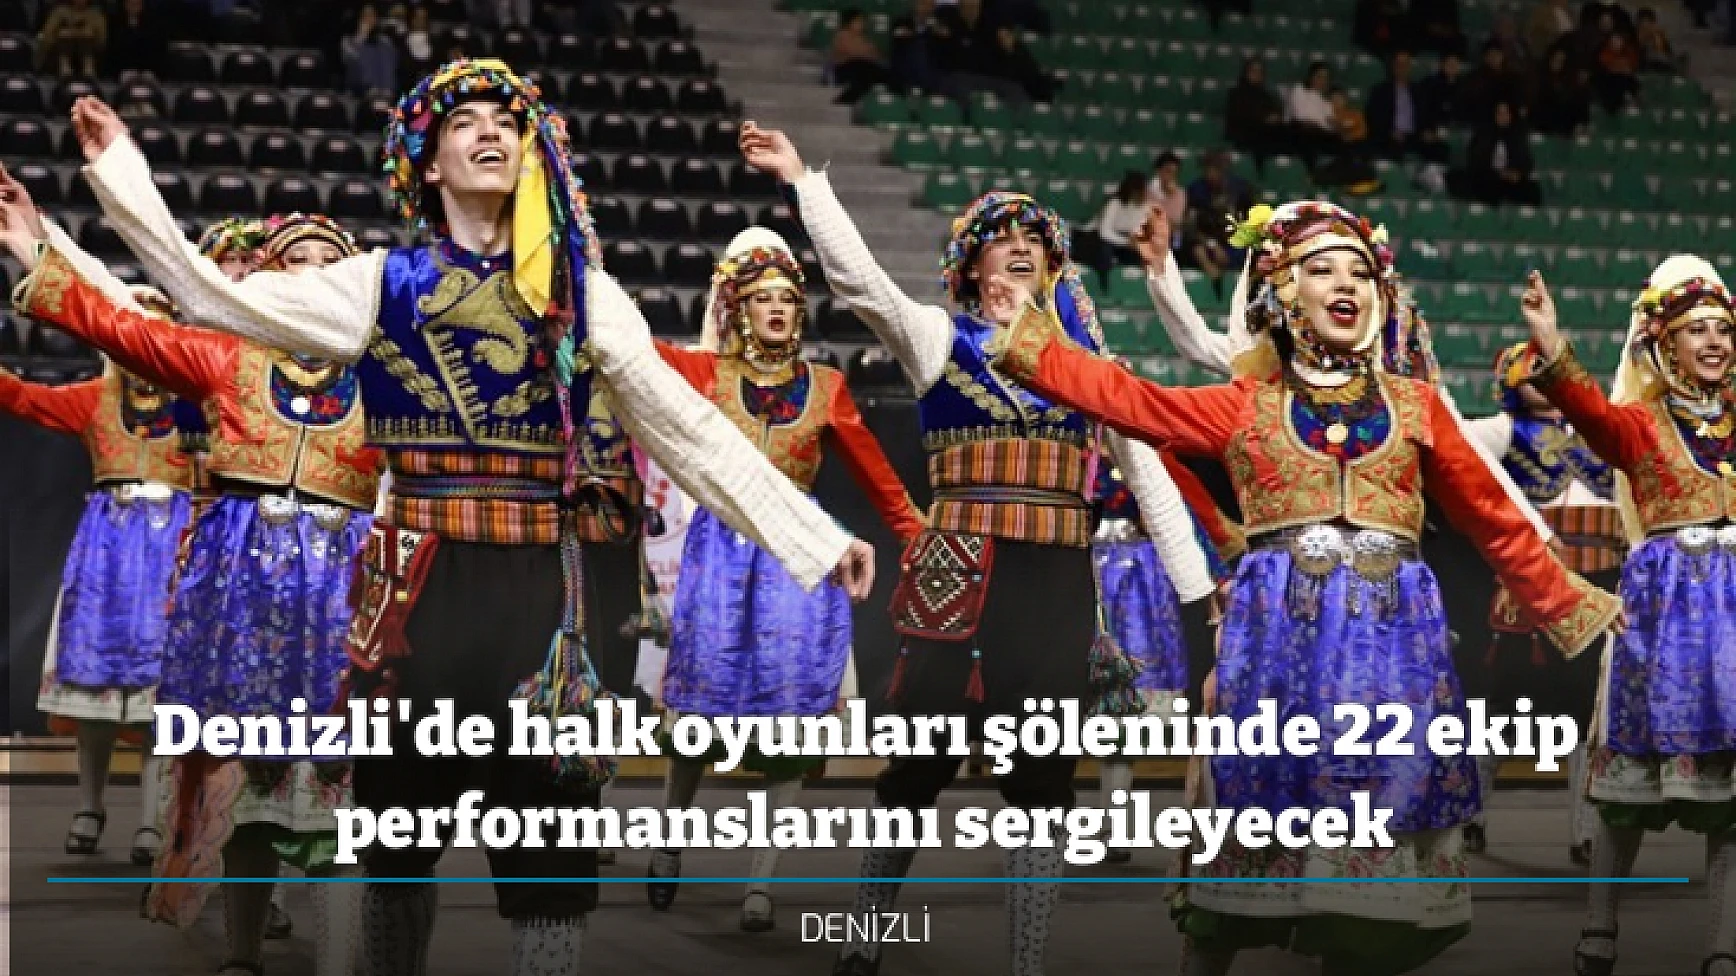 Denizli'de halk oyunları şöleninde 22 ekip performanslarını sergileyecek